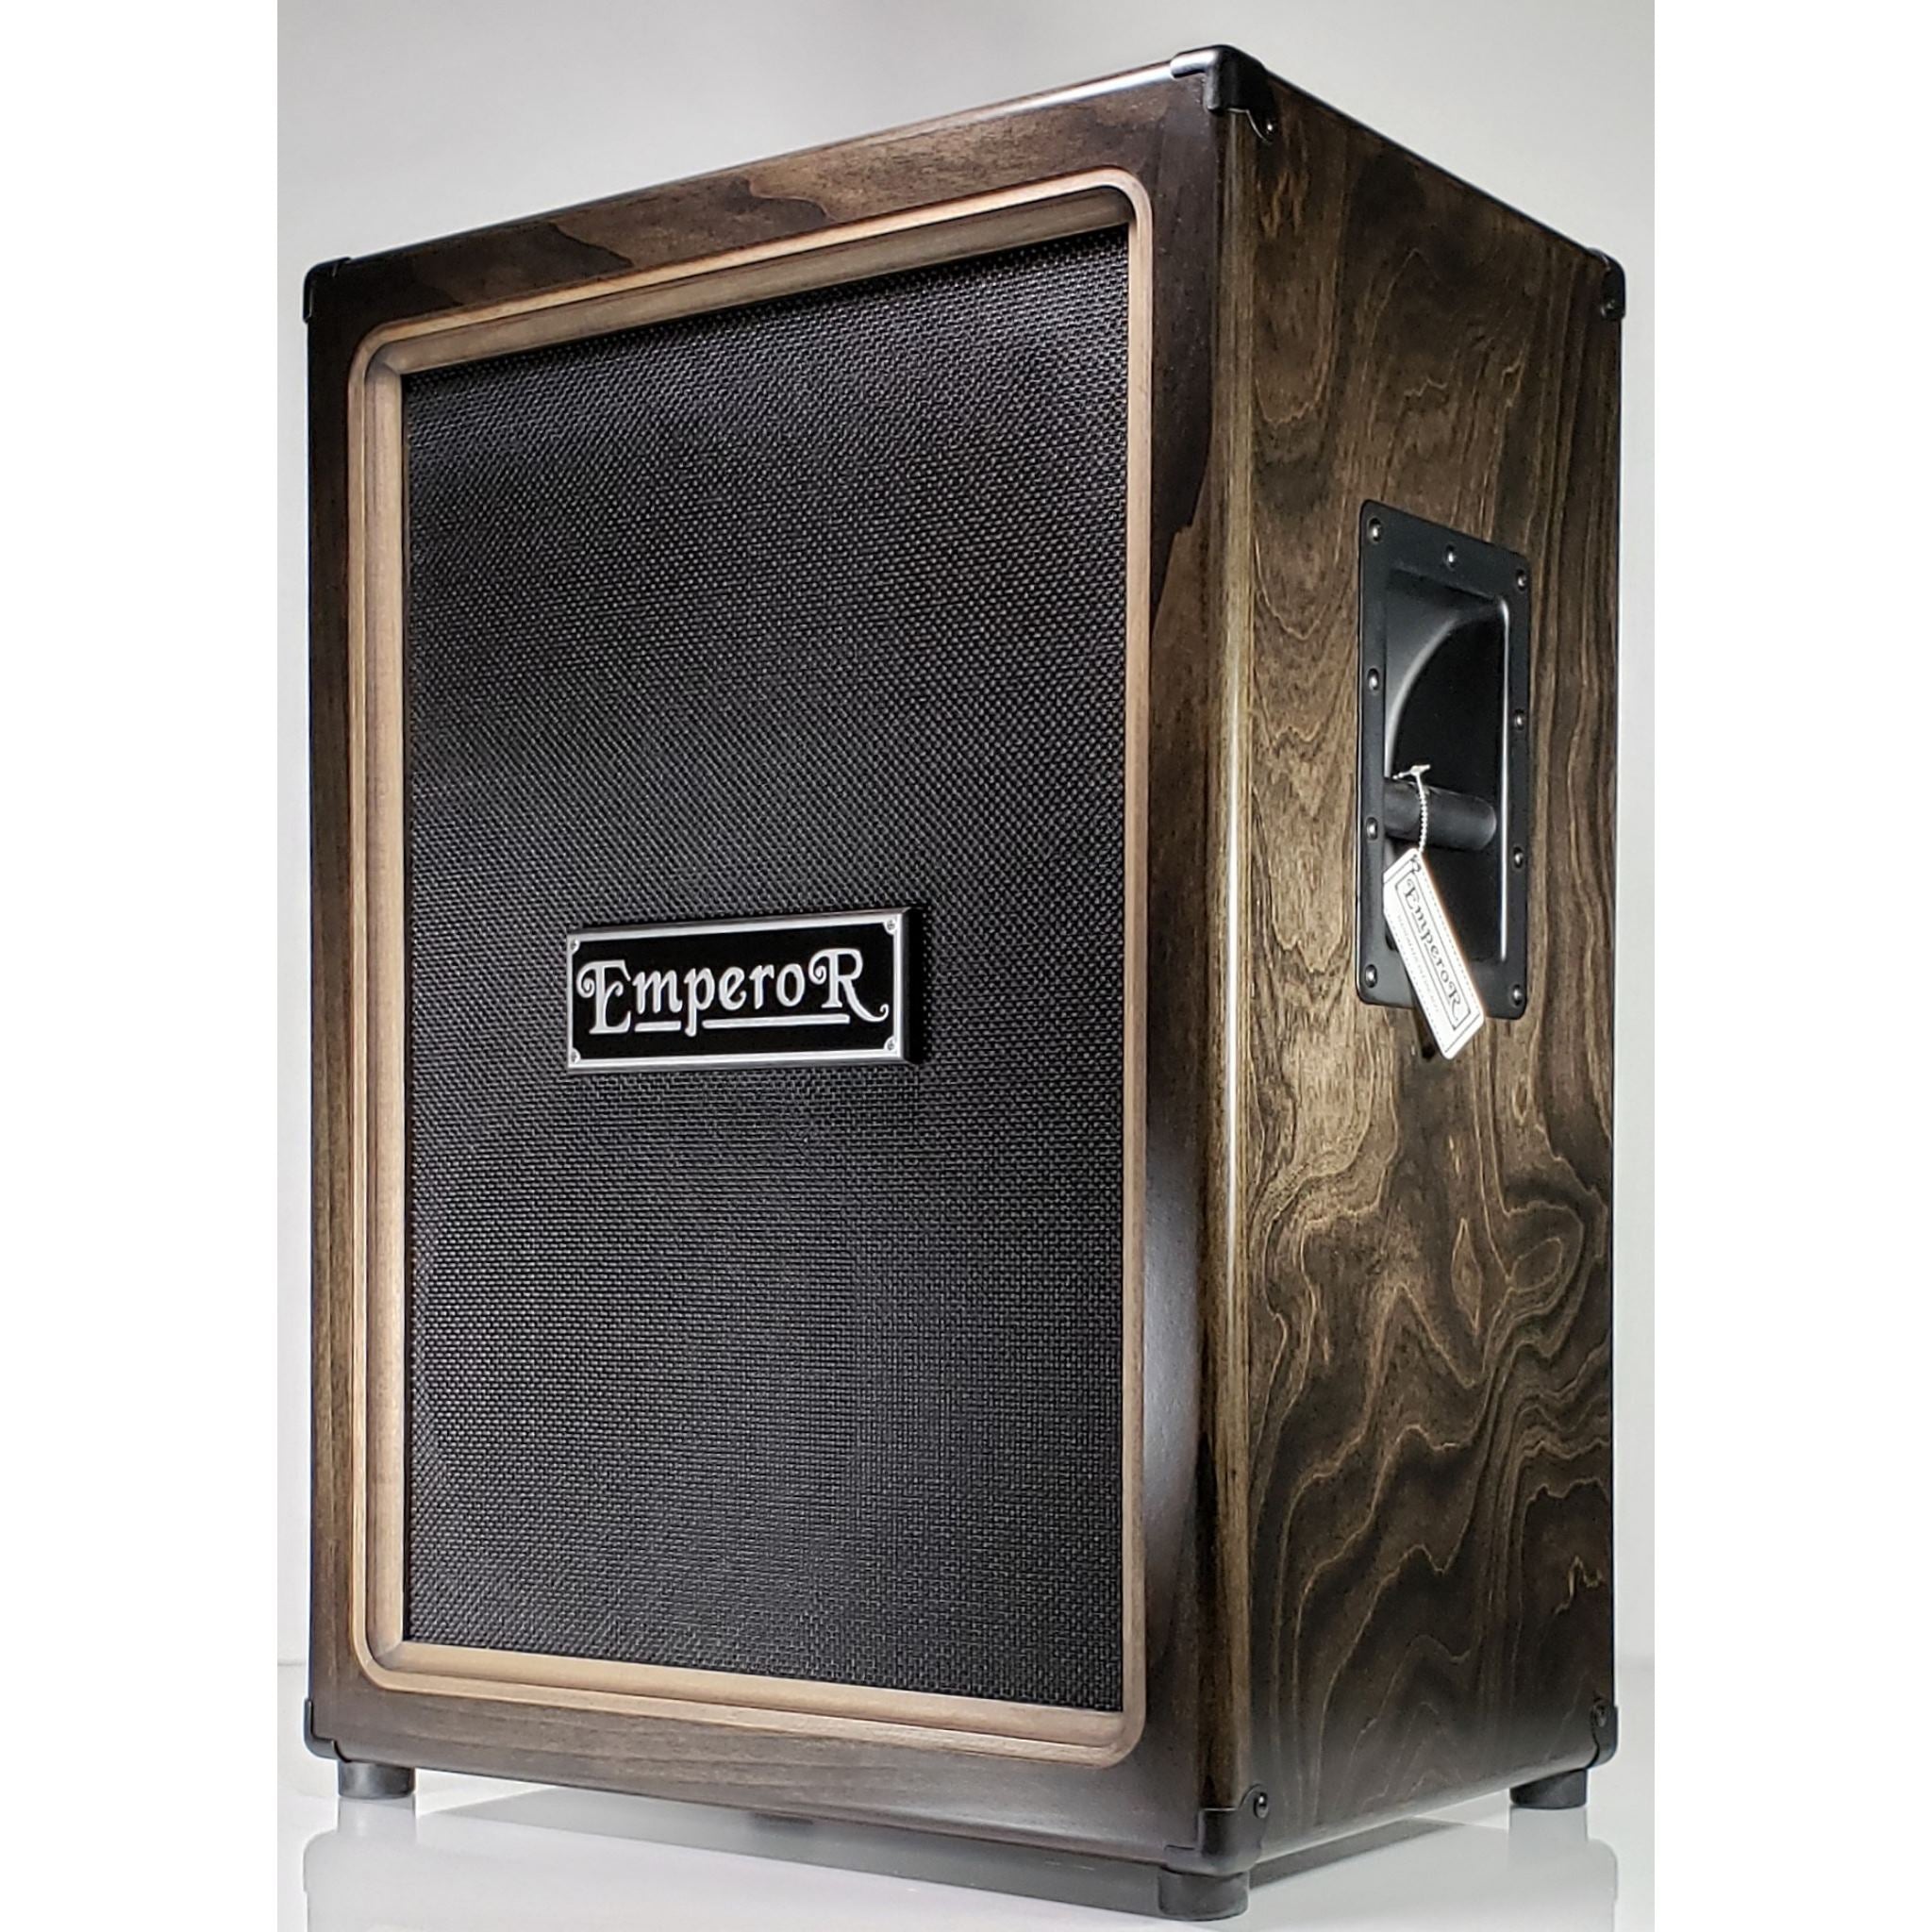 a vertical 2x12 guitar speaker cabinet